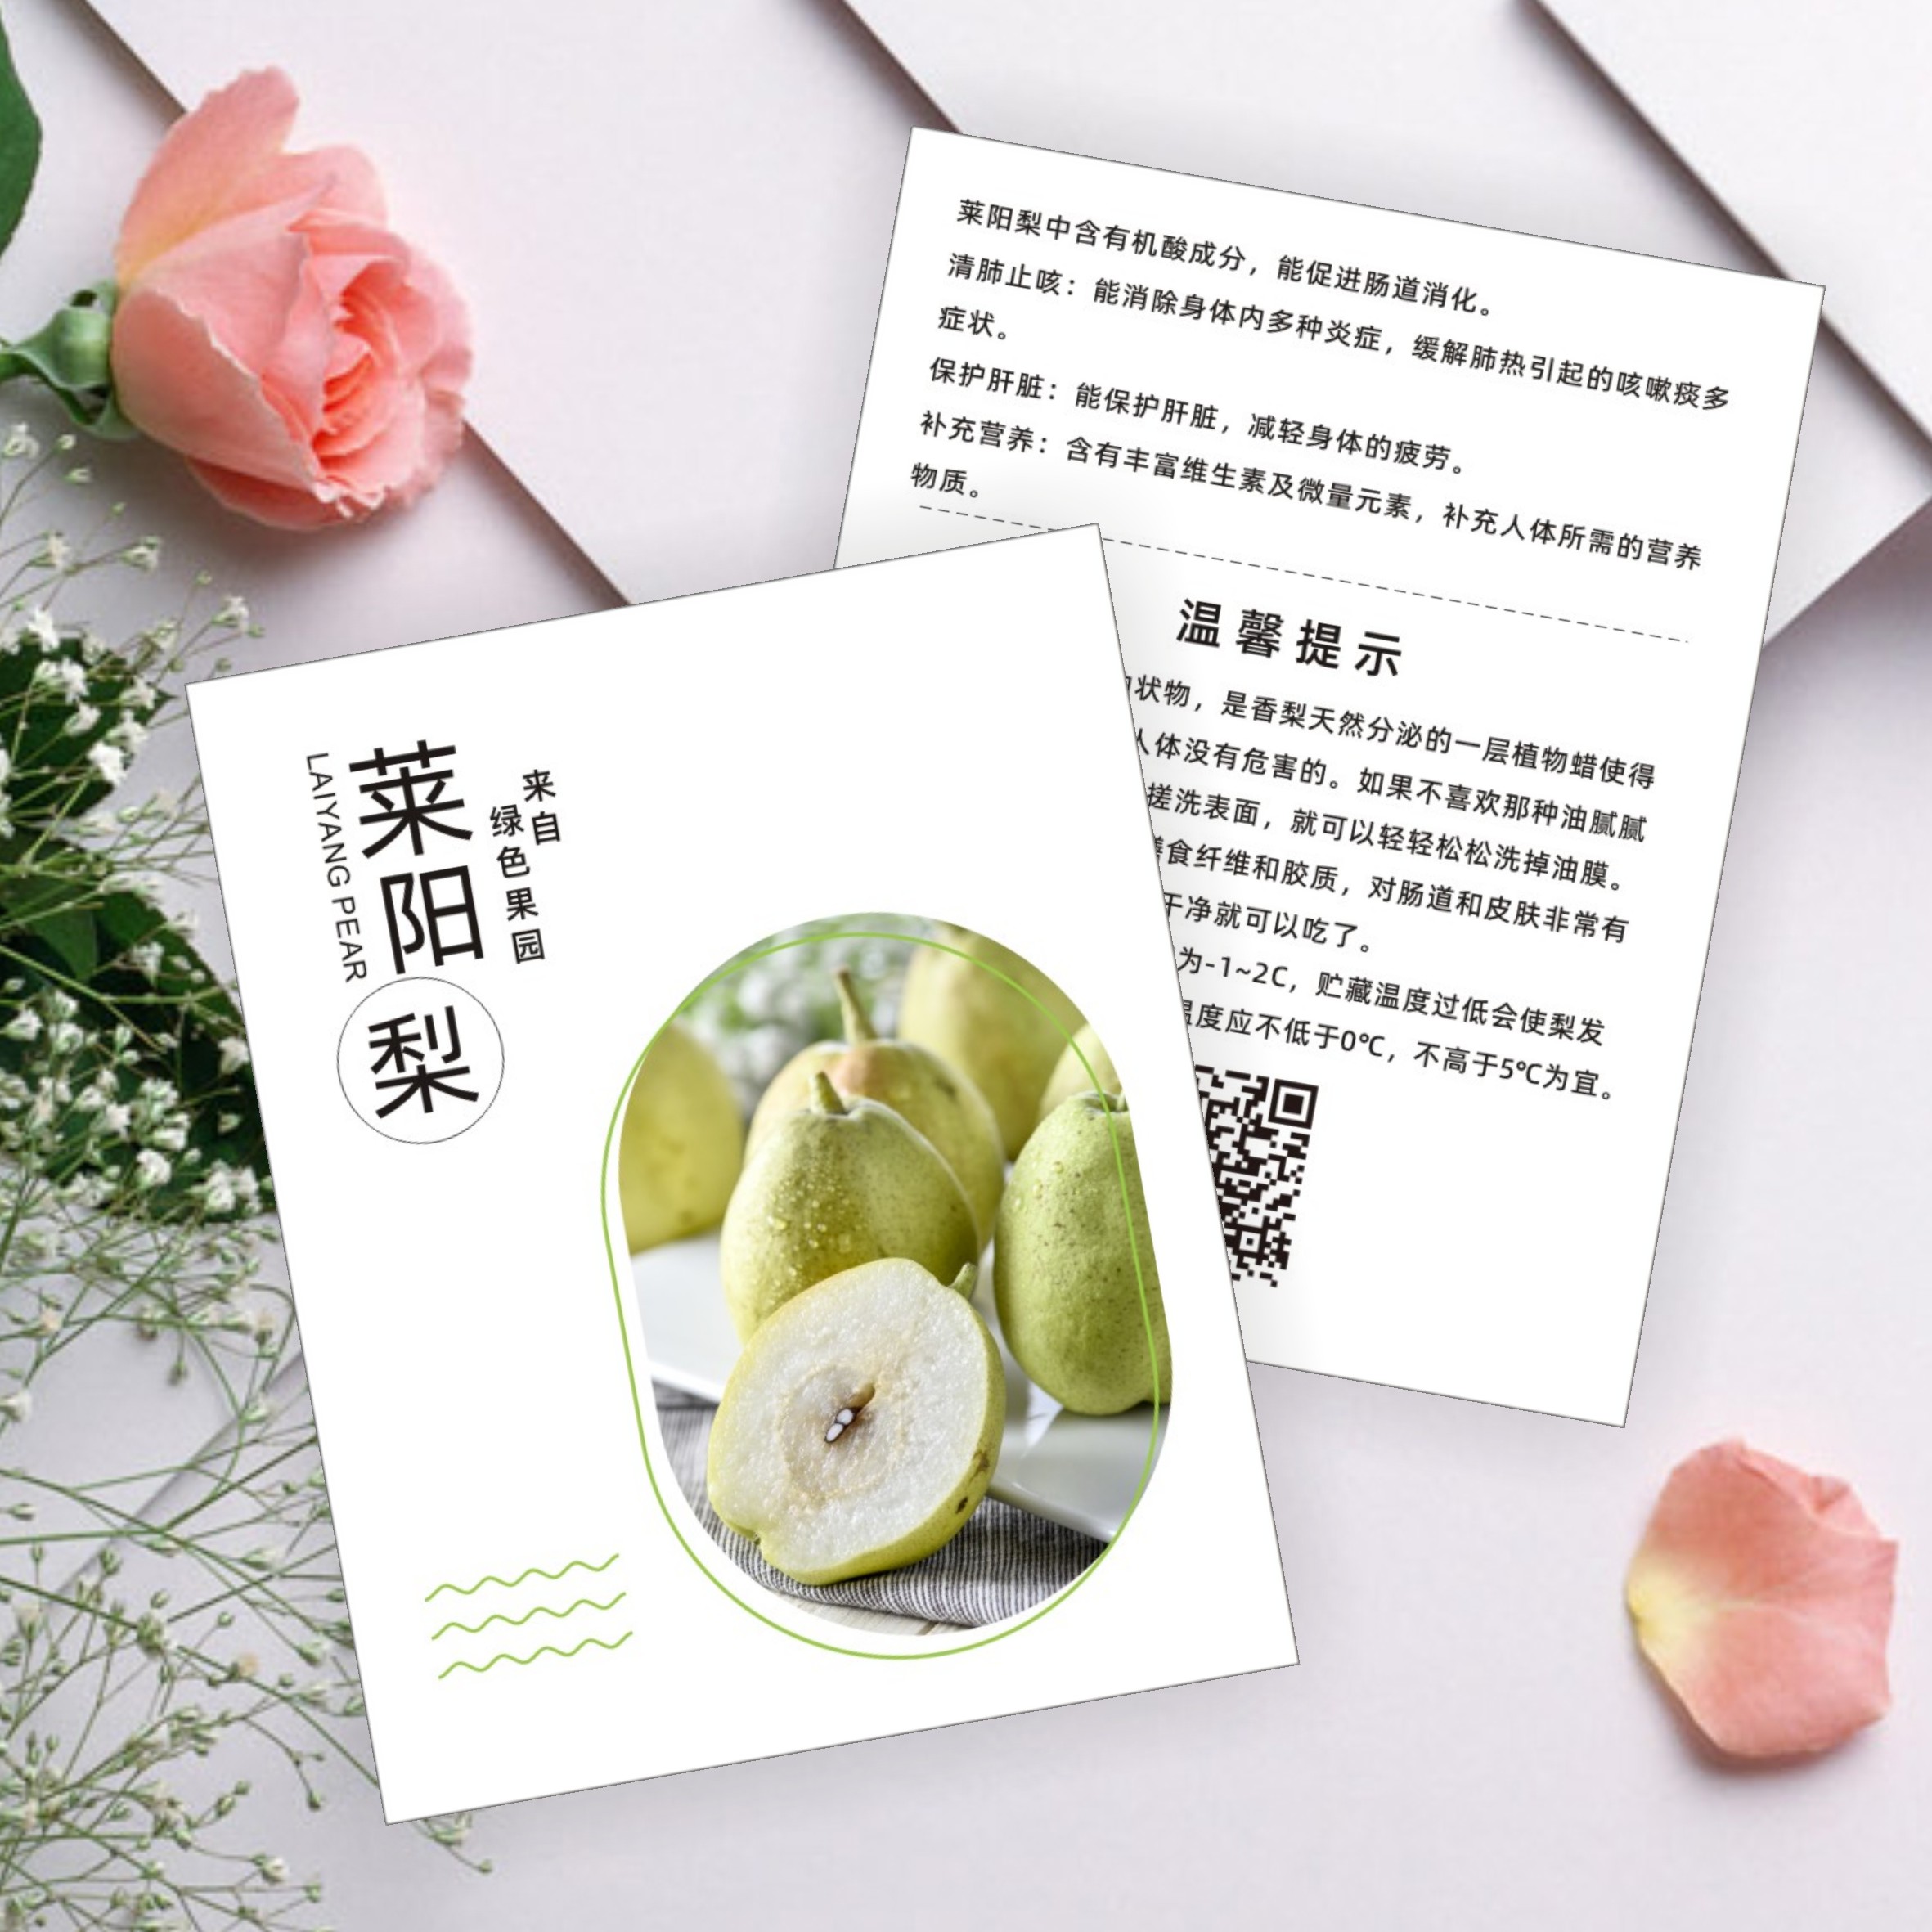 梨子宣传卡片定制酥梨水果介绍温馨提示苹果梨砀山梨皇冠梨卡片